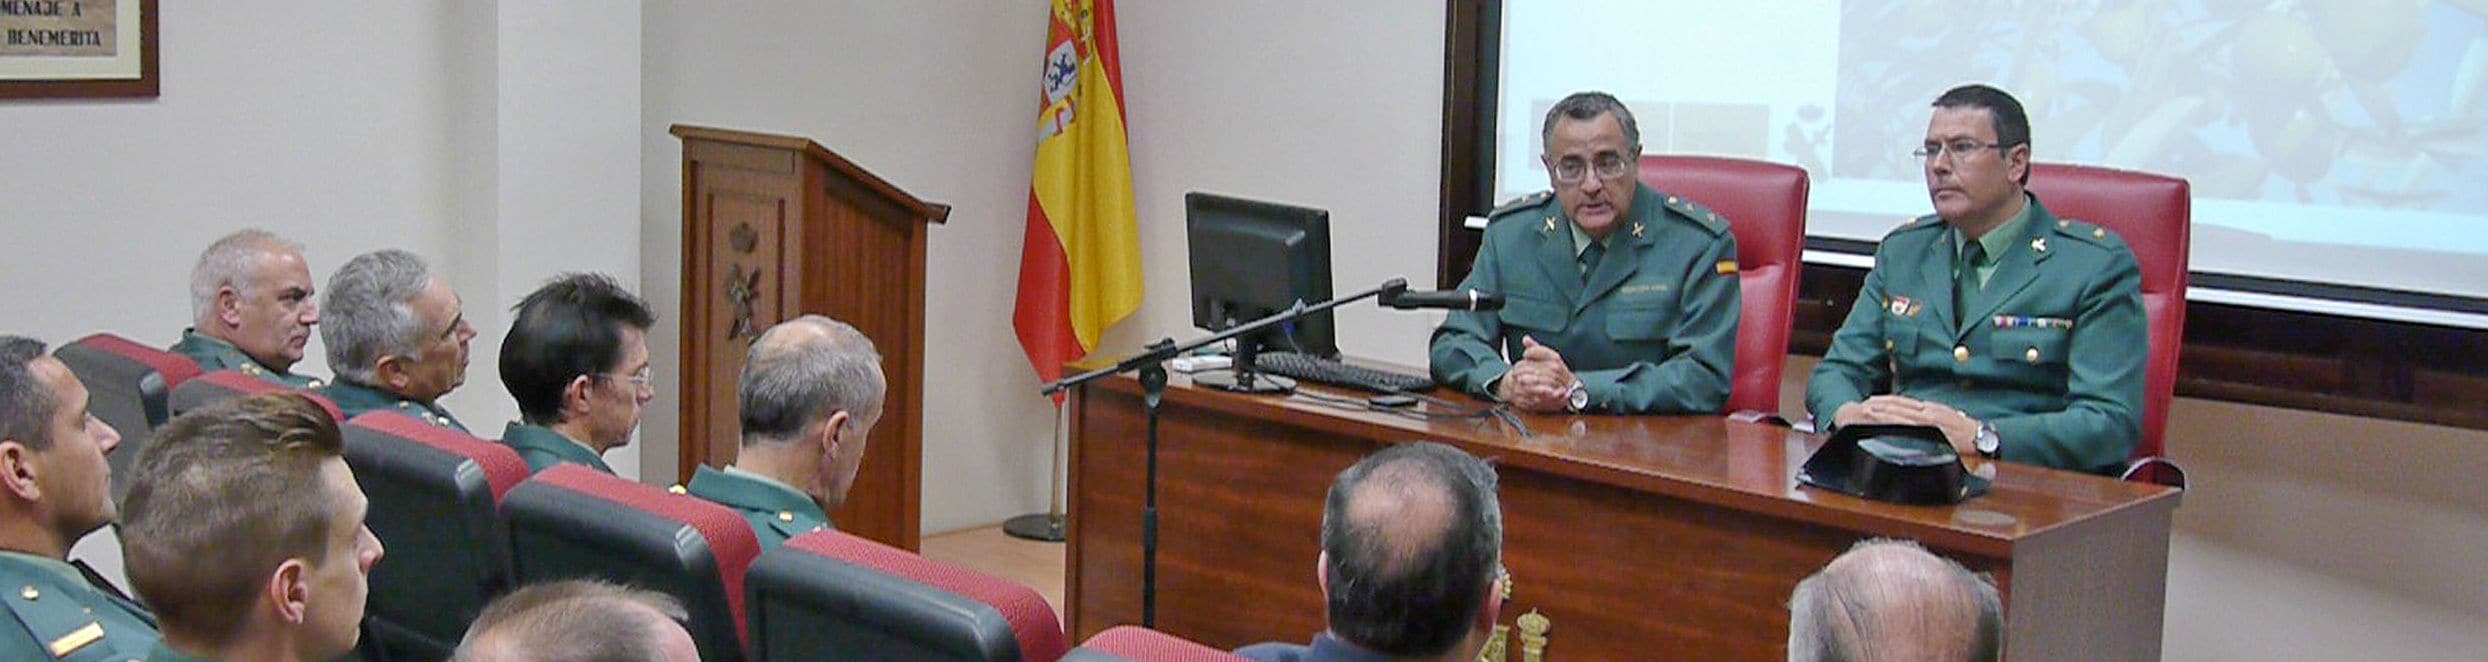 El coordinador de la operación, Luis Ortega, a la izquierda, preside un acto de la Guardia Civil